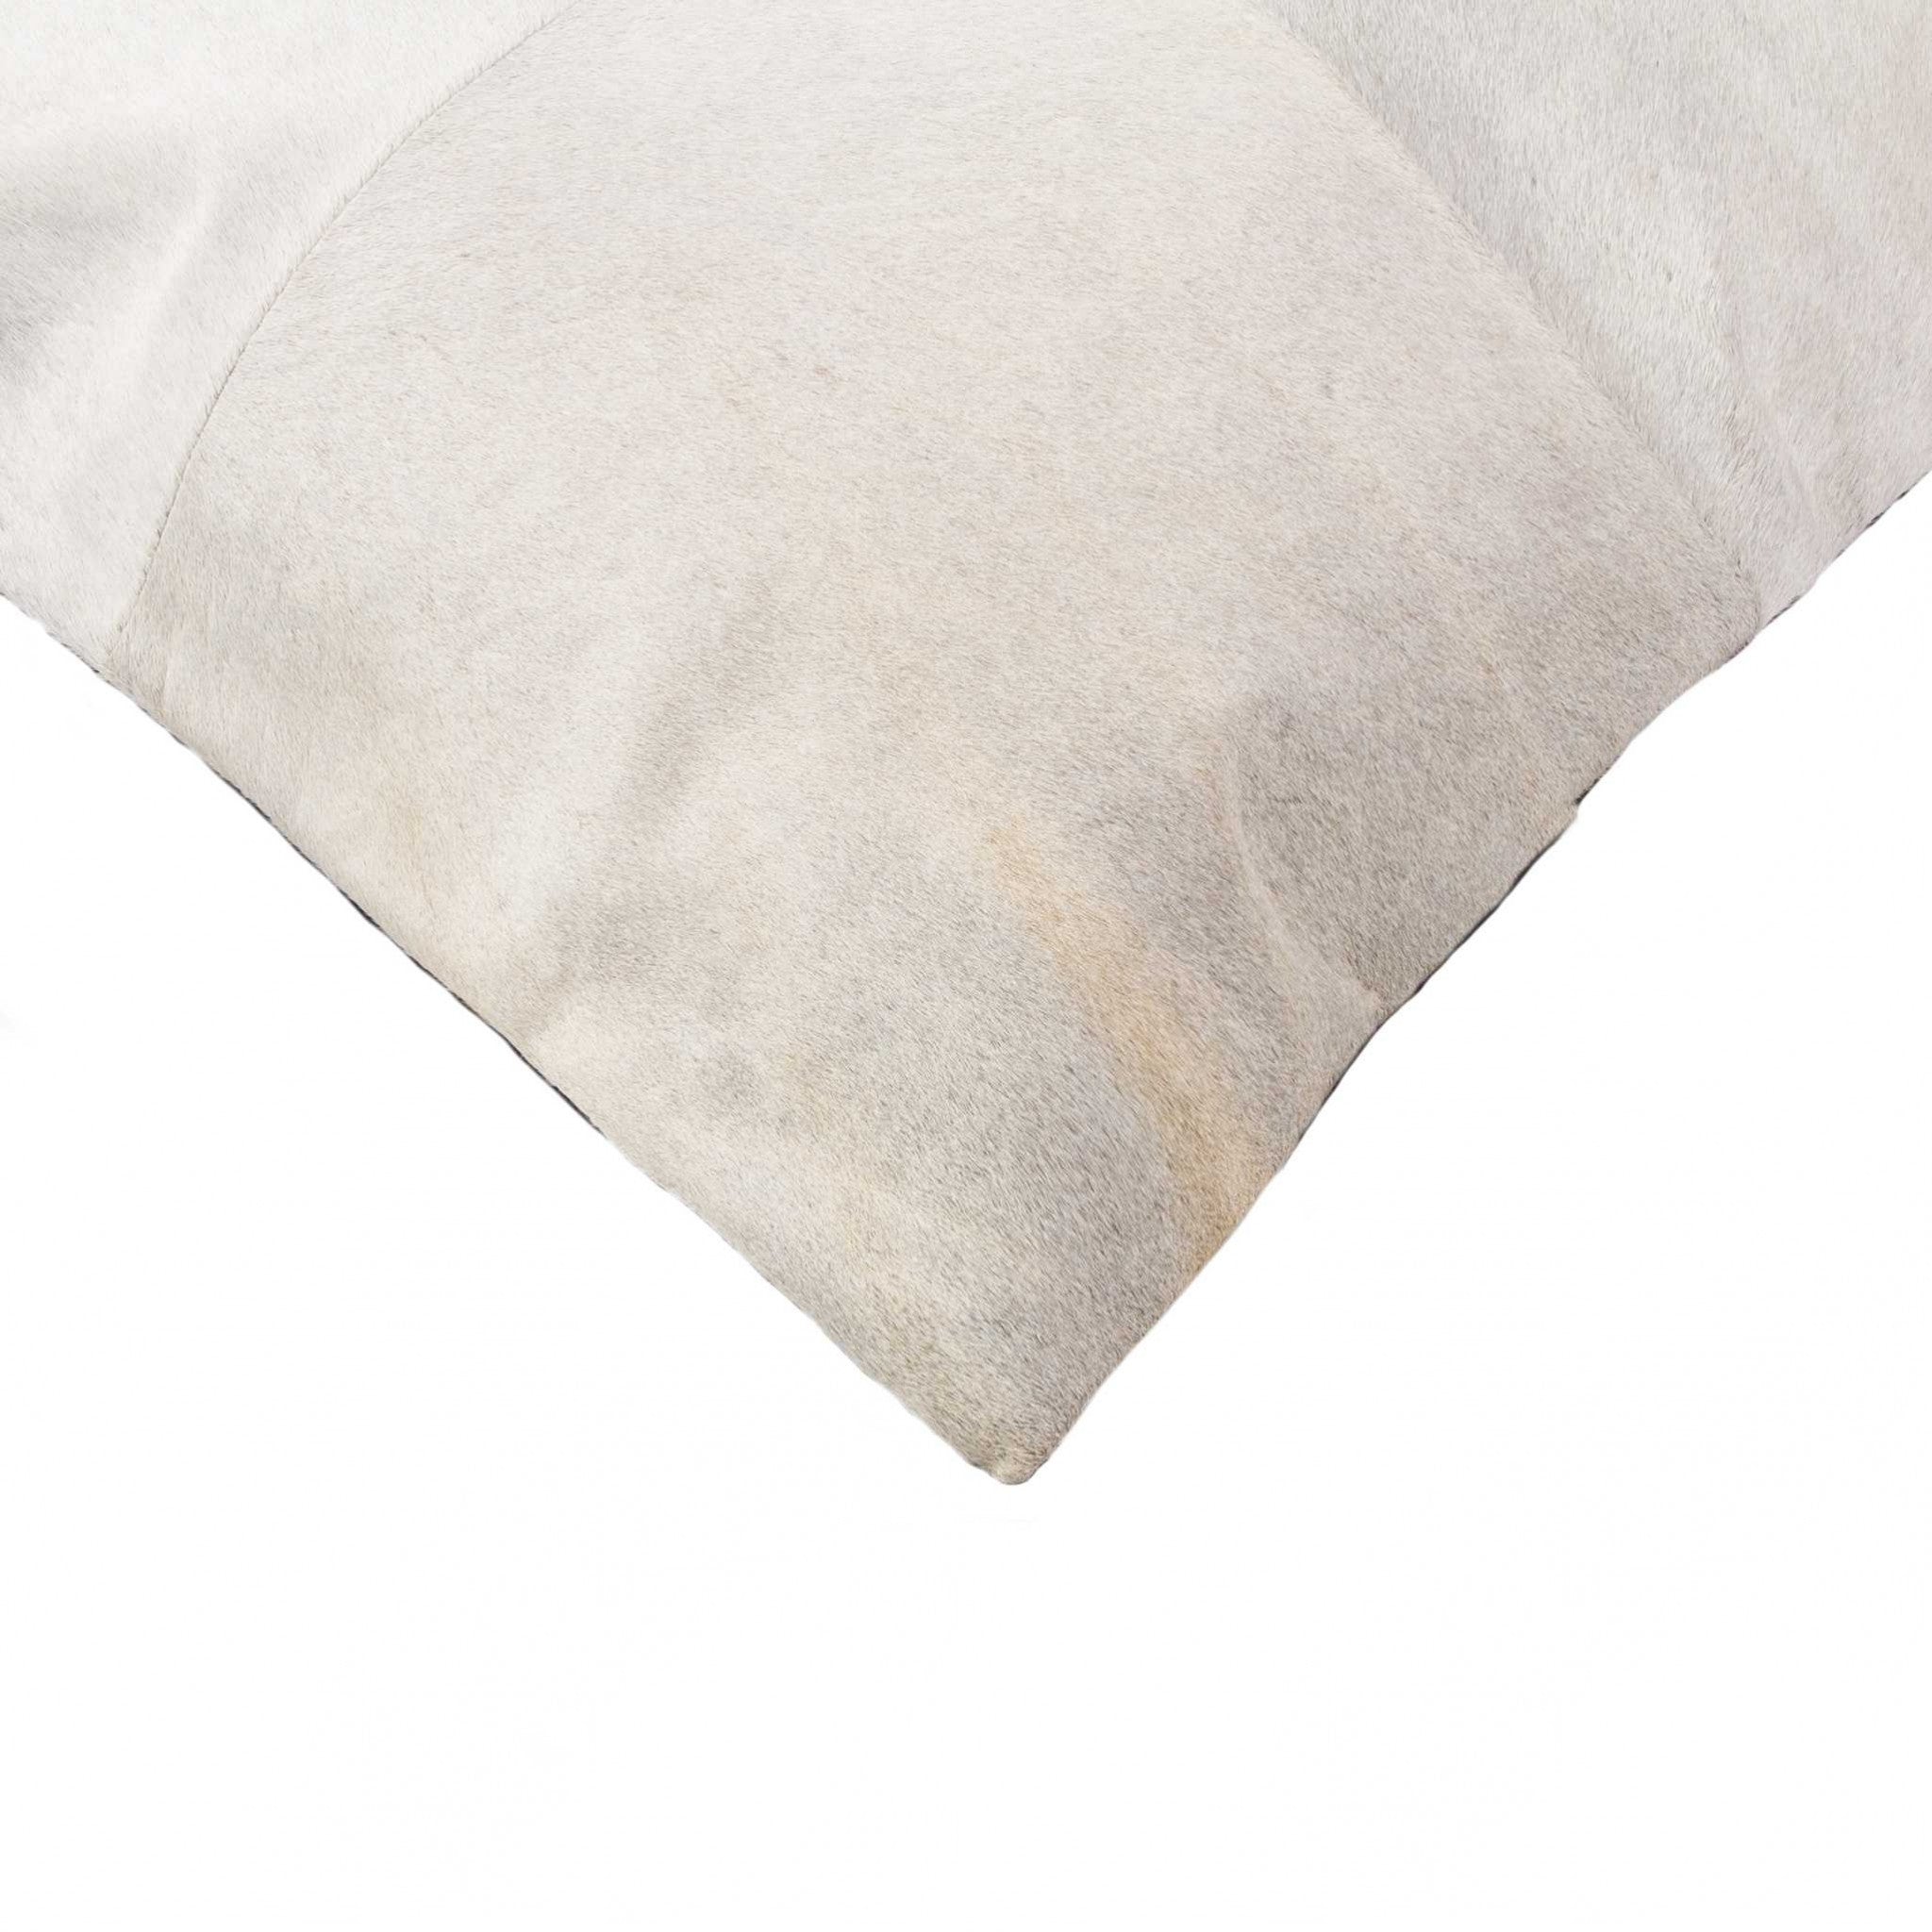 18" X 18" X 5" Off White Quattro  Pillow